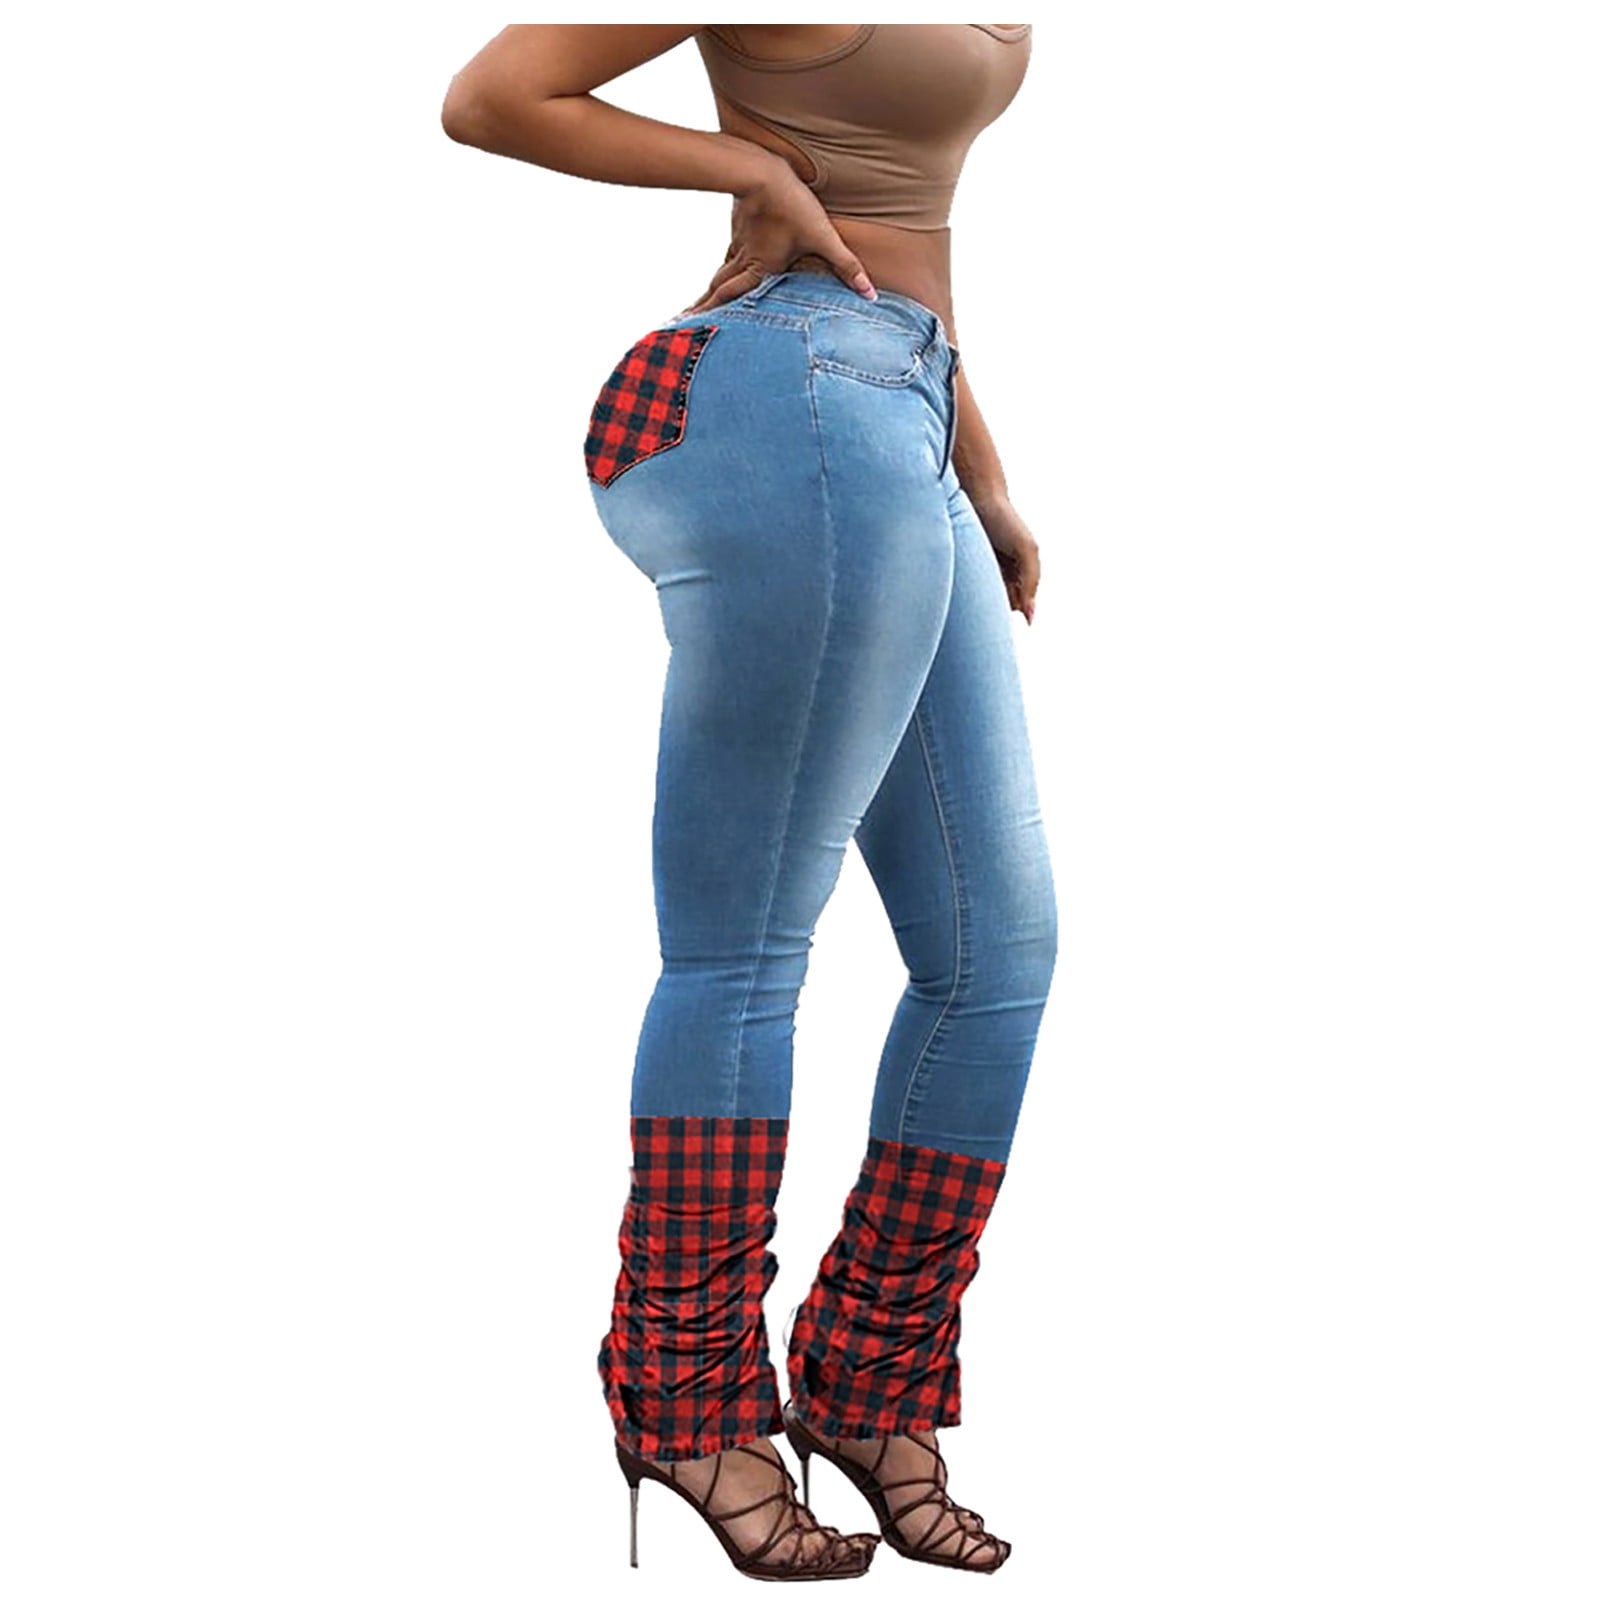 Aayomet Skinny Jeans For Women Women's Standard Mid Rise Curvy Skinny Jean, Blue XXL 